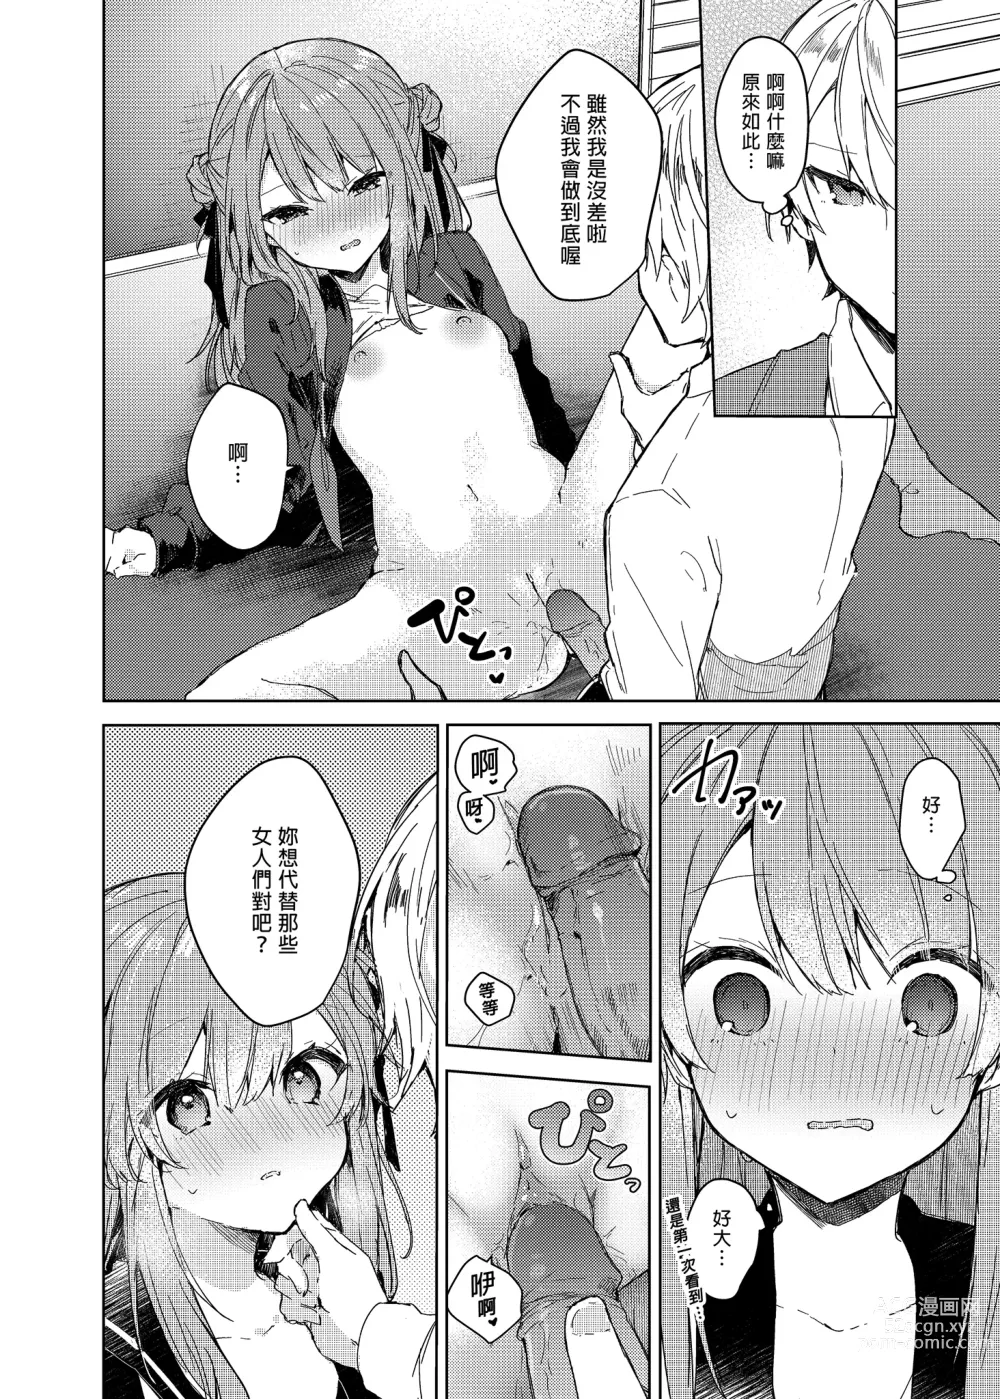 Page 22 of doujinshi 今天開始當個壞孩子。 (decensored)